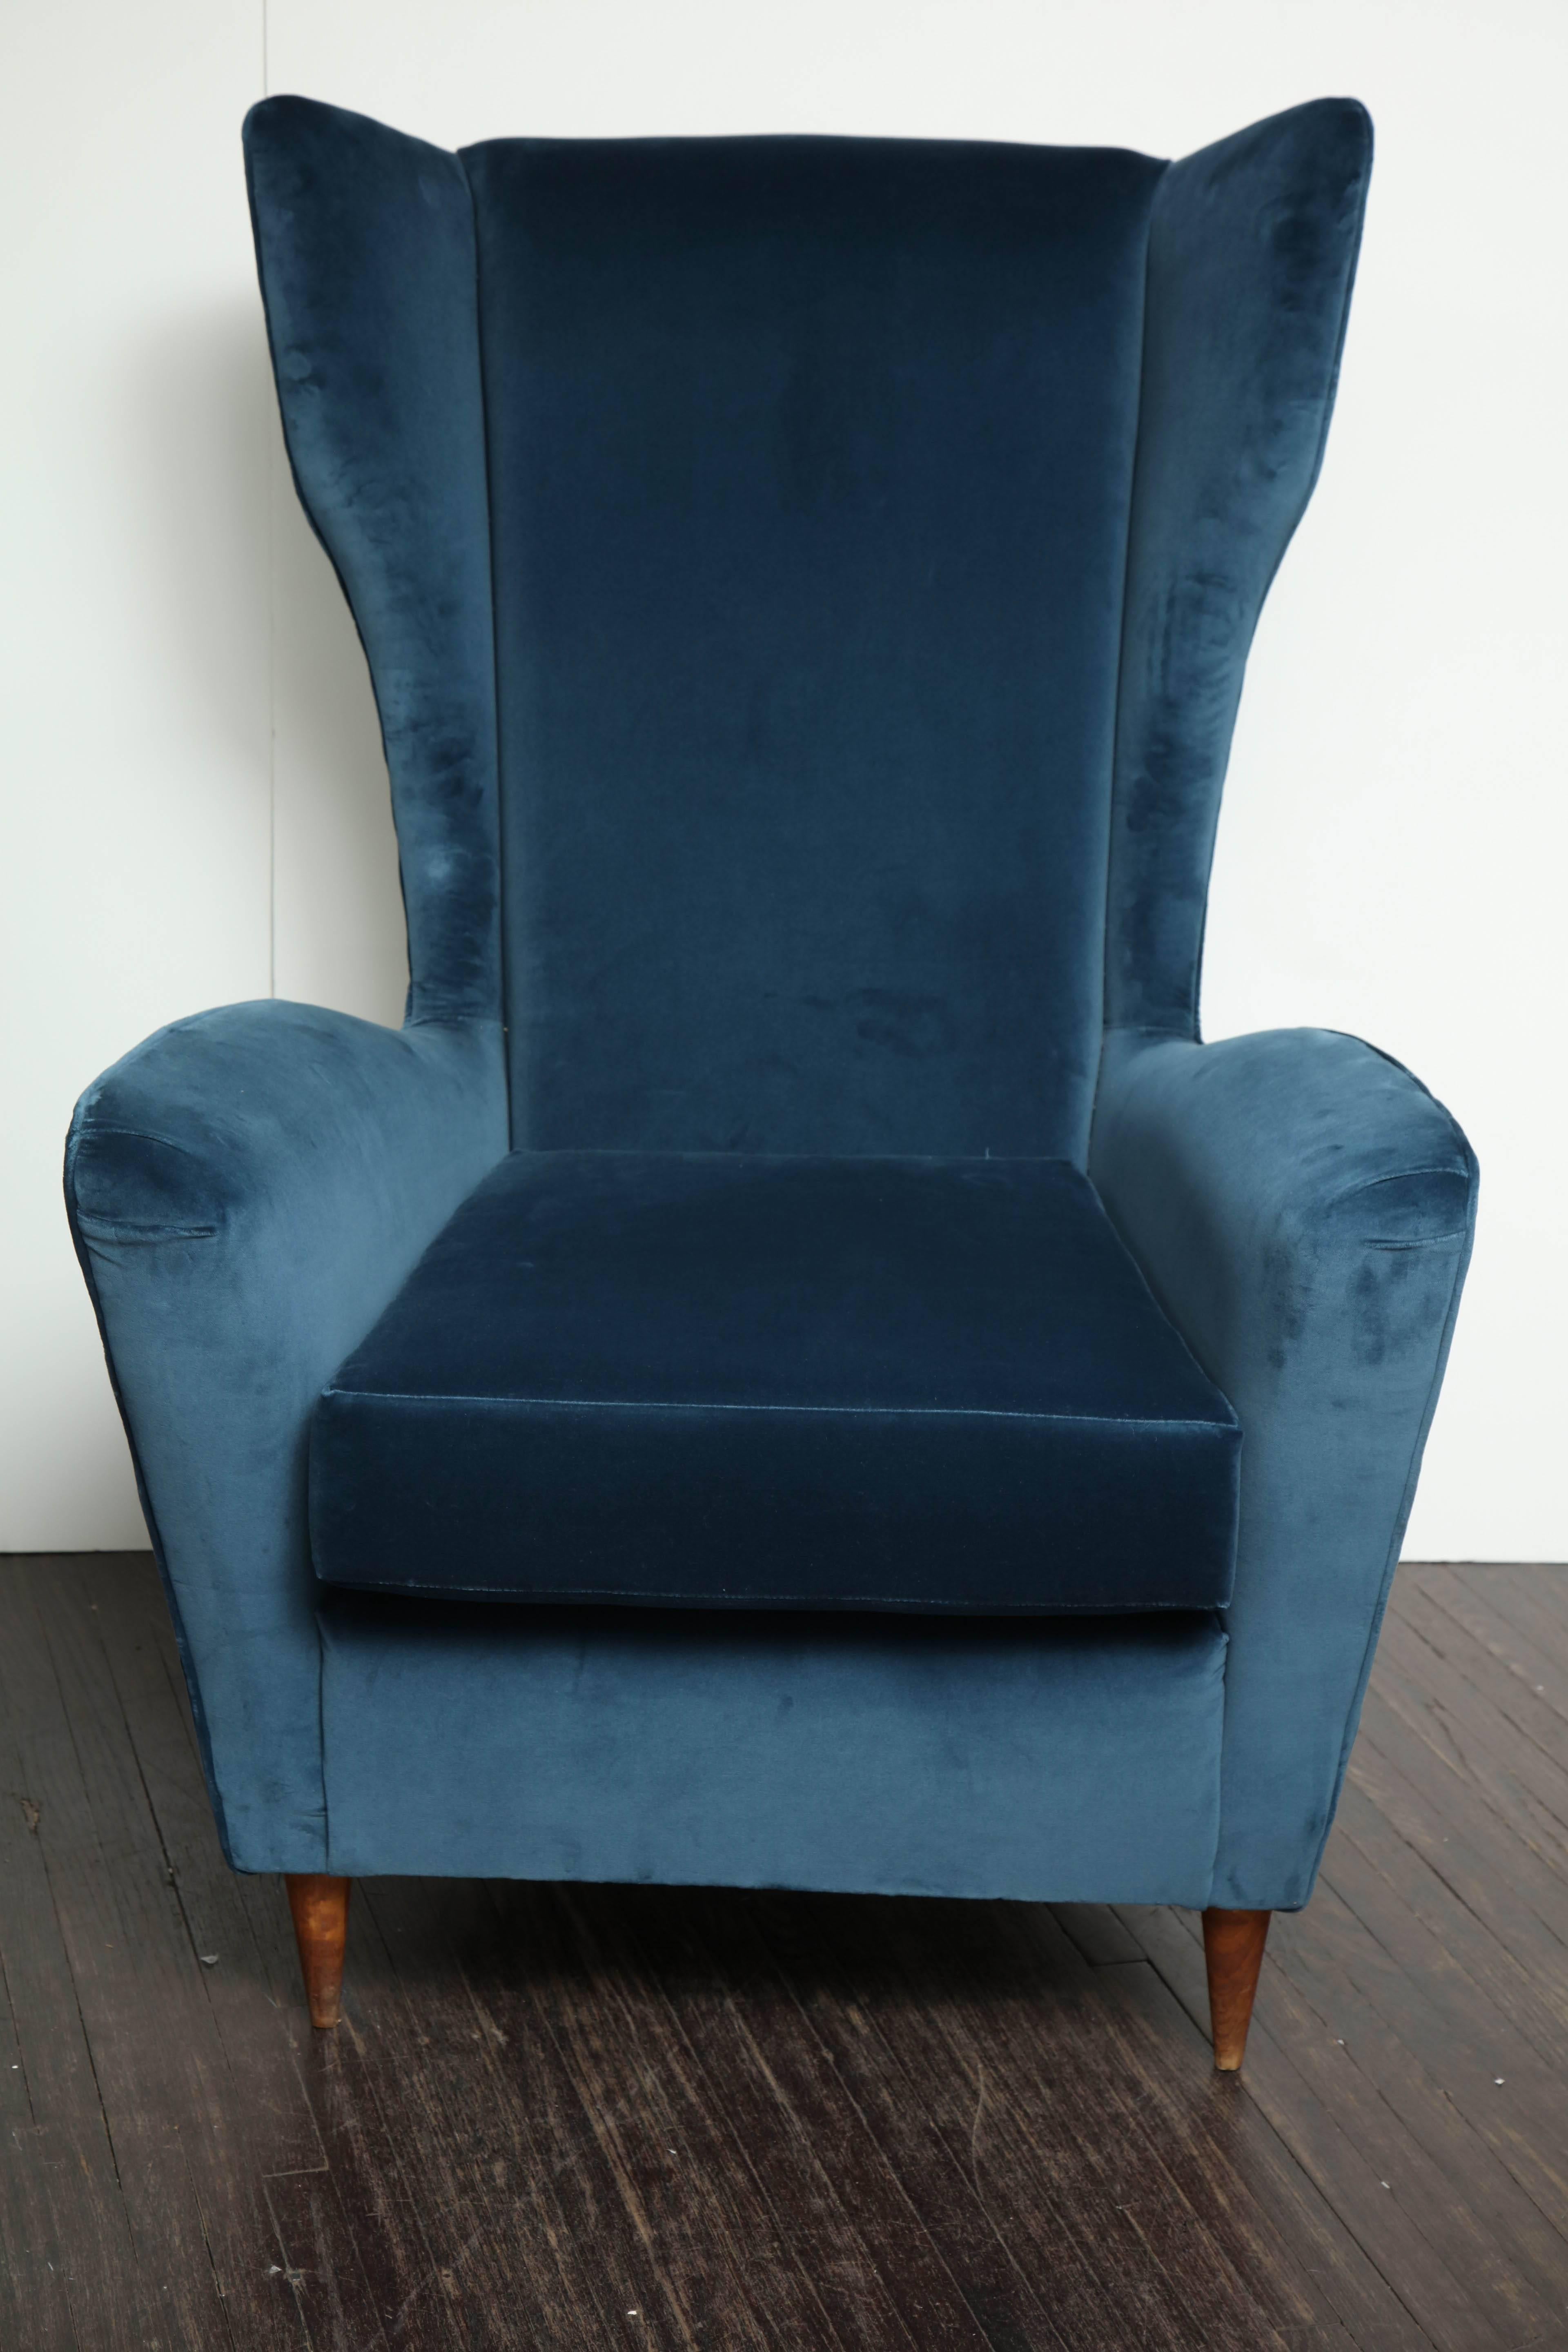 Vintage Italian modern wingback chairs in blue velvet.